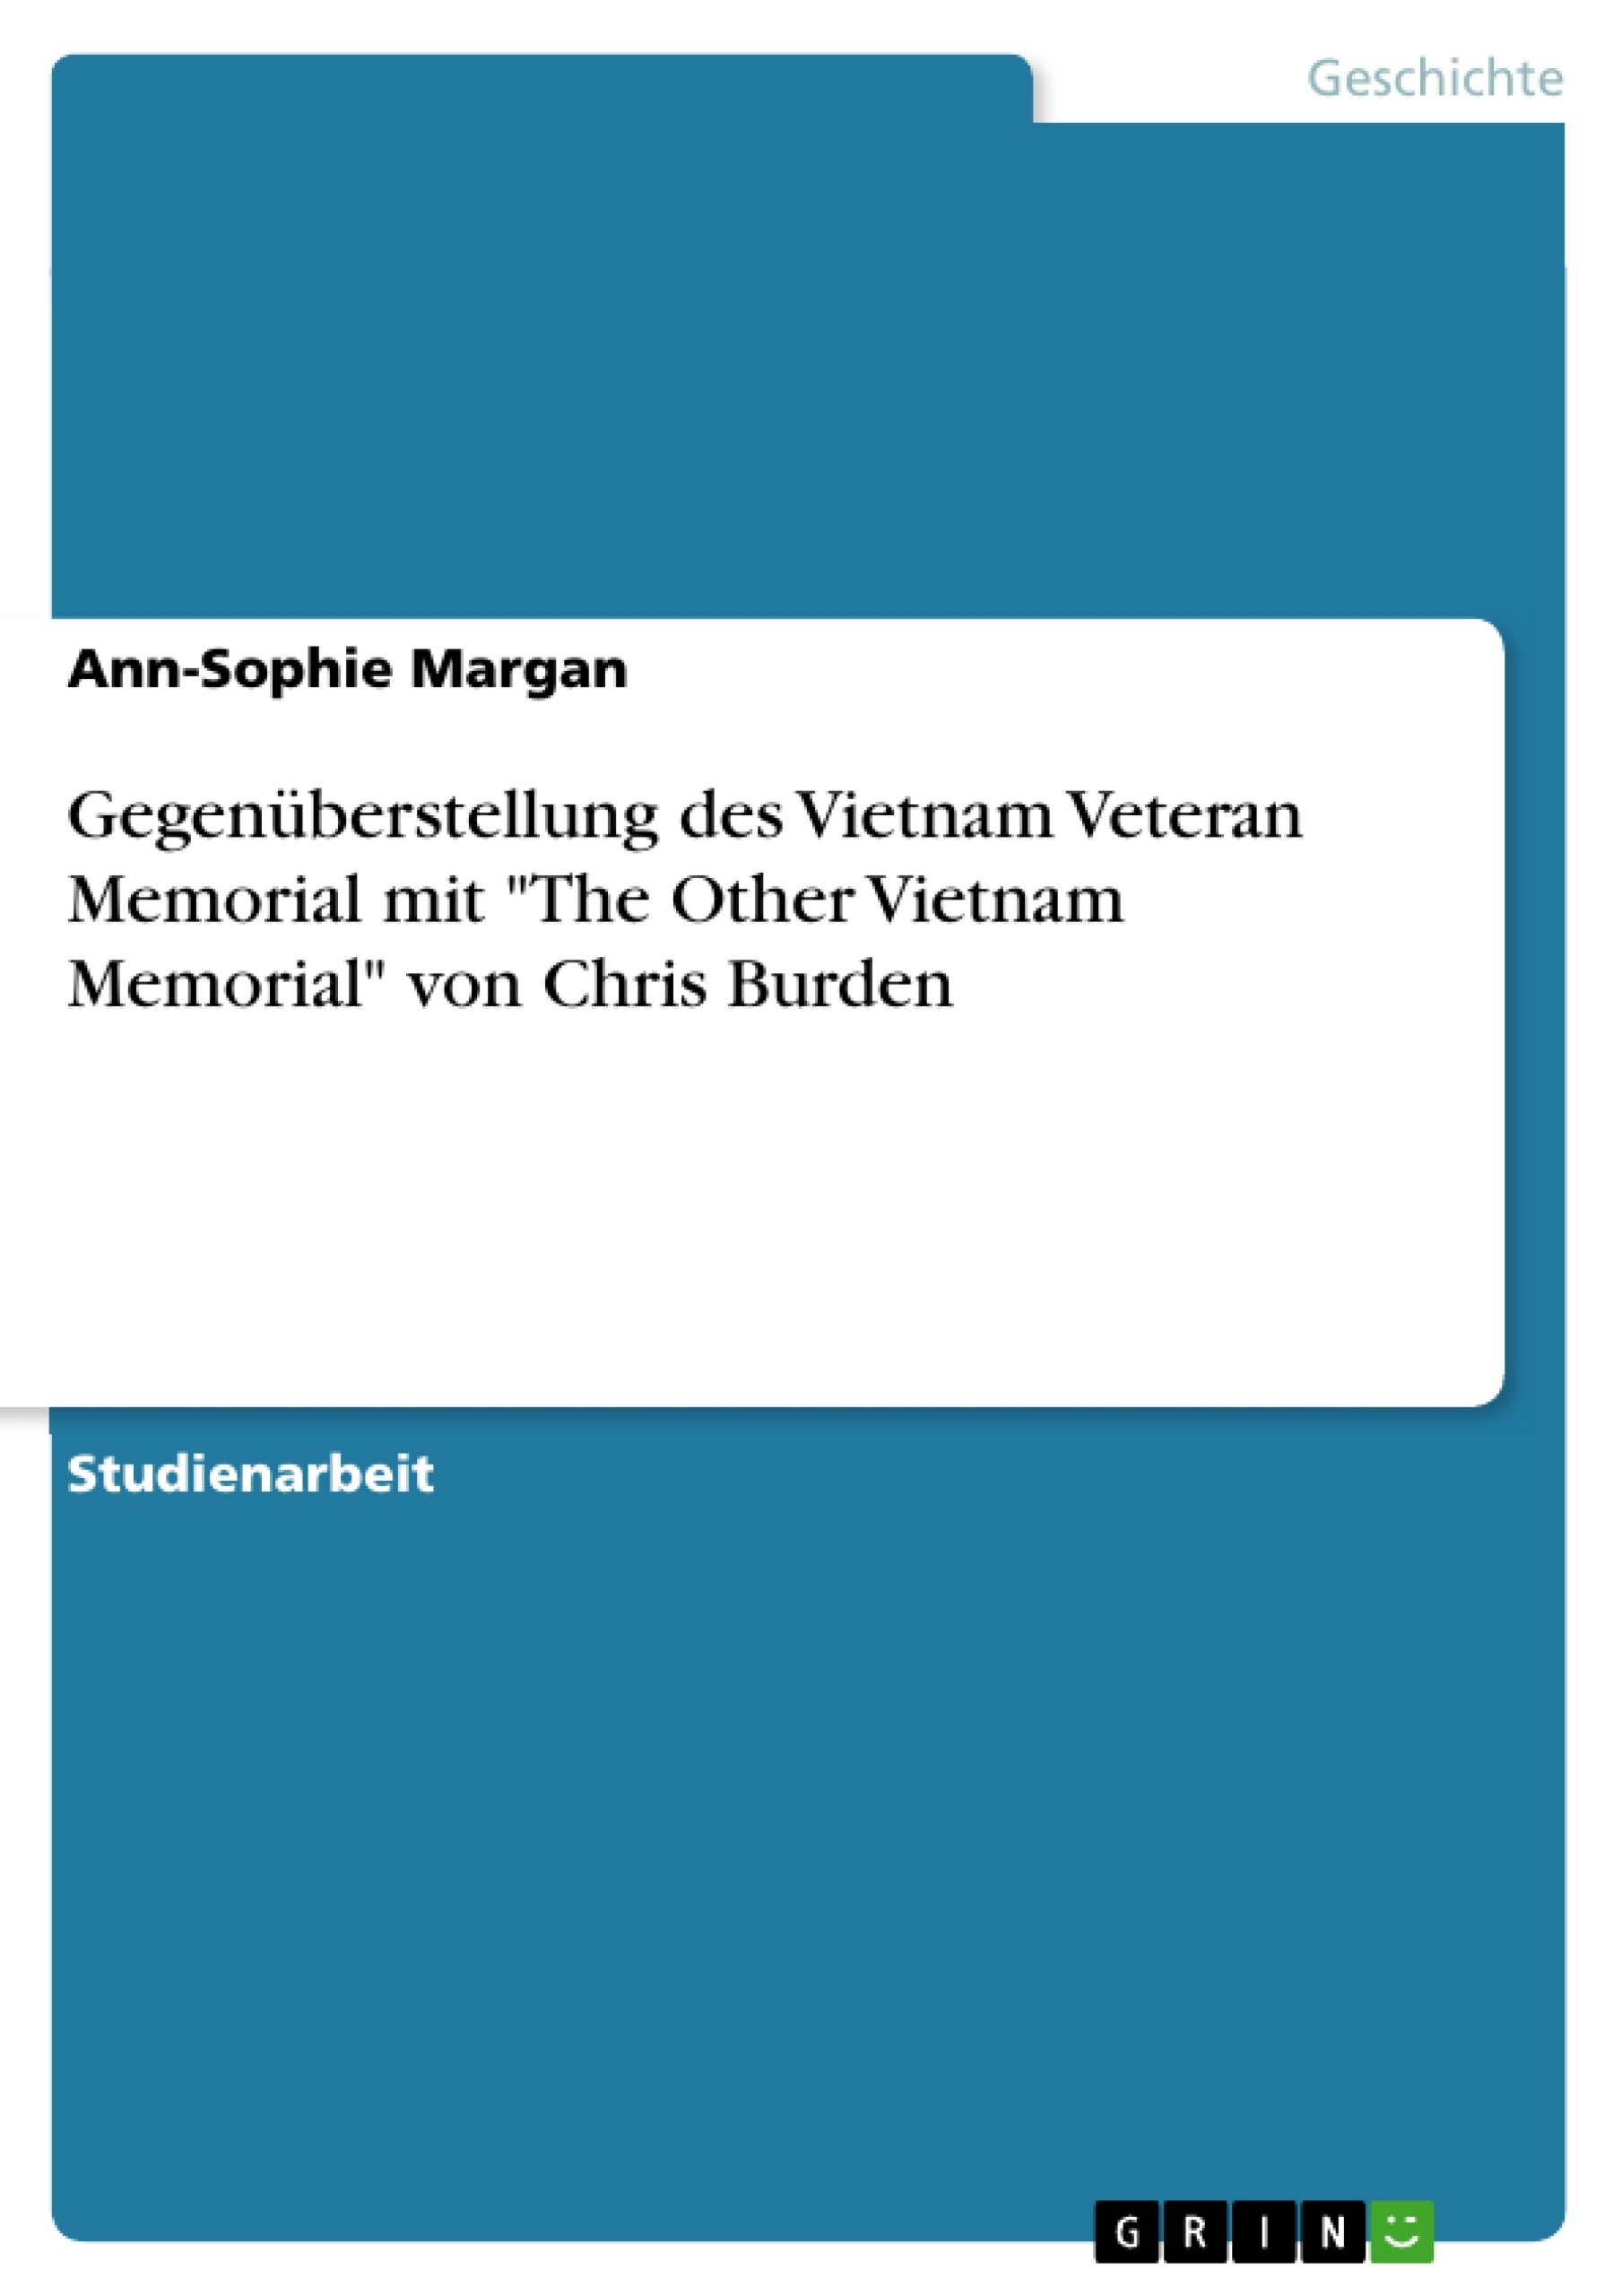 Titre: Gegenüberstellung des Vietnam Veteran Memorial mit "The Other Vietnam Memorial" von Chris Burden